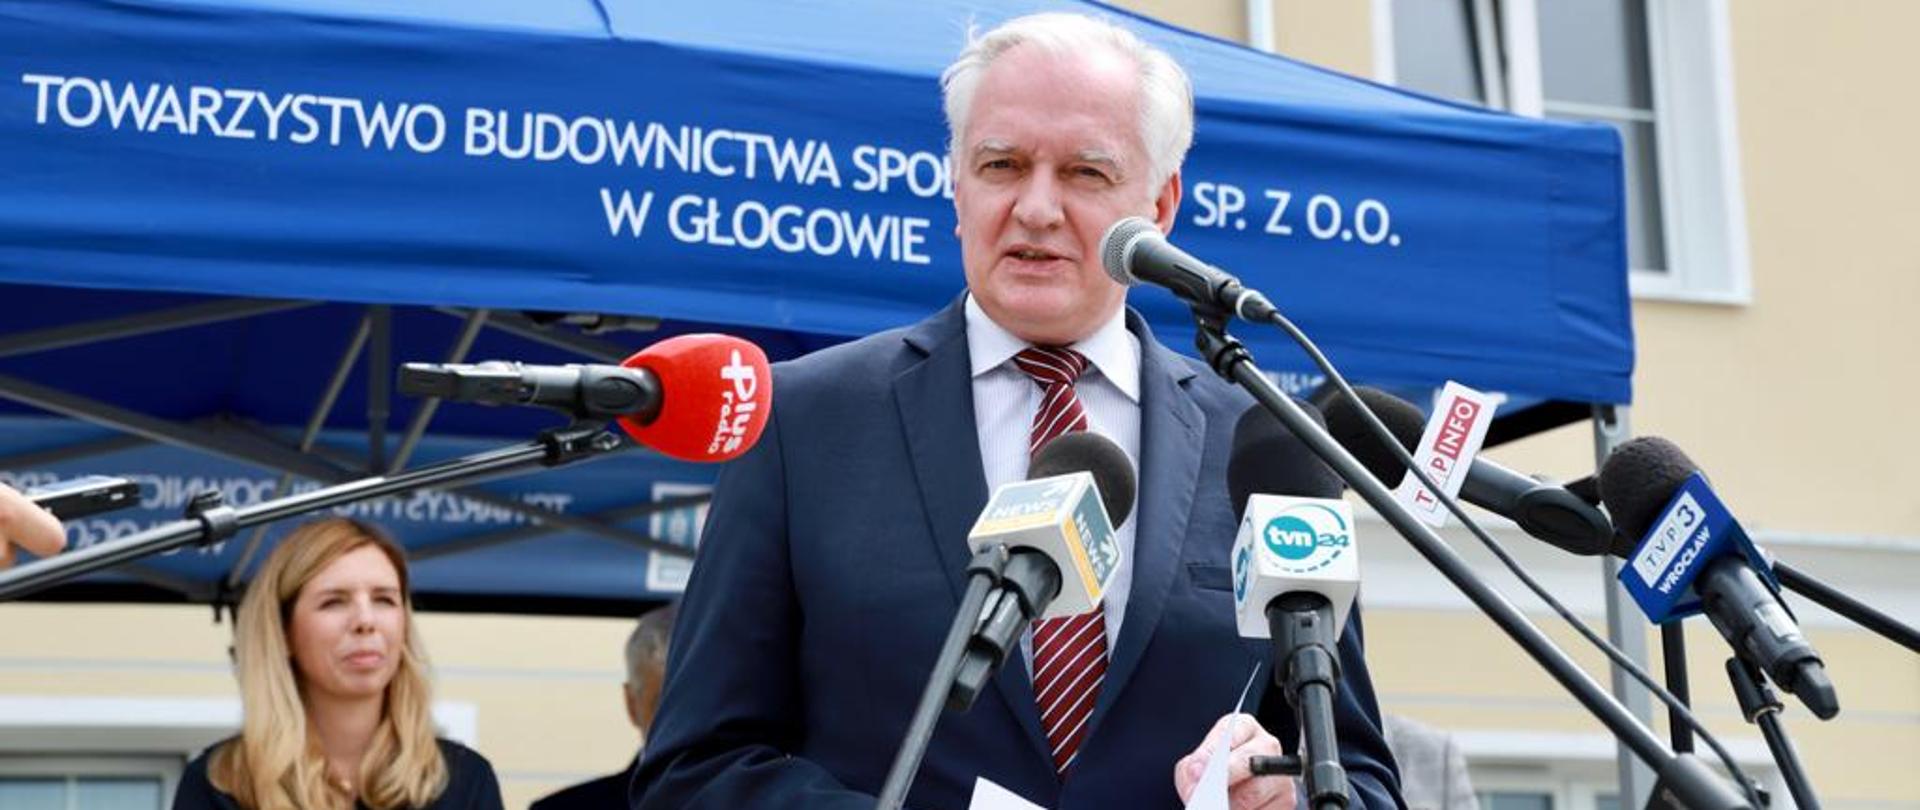 Wicepremier Jarosław Gowin wręczył klucze do nowych mieszkań w Głogowie1